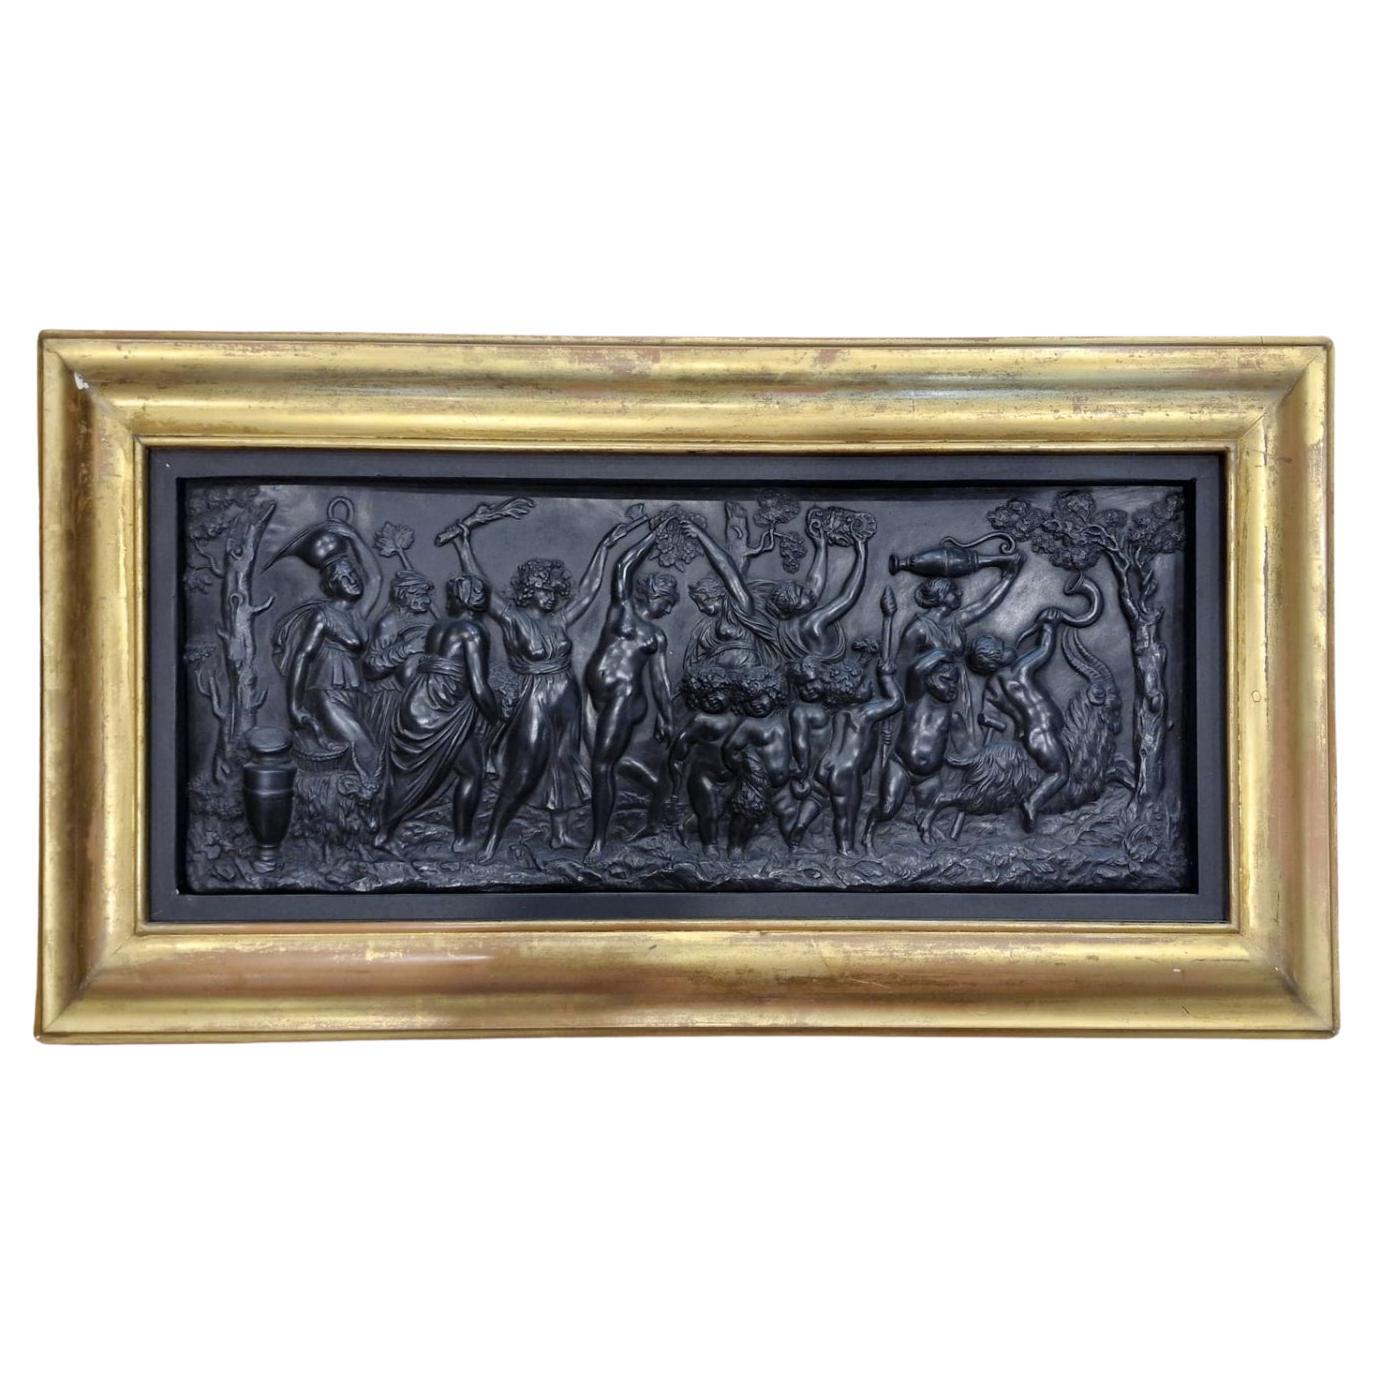 Plaque : Triomphe bacchanalien en basalte noir, Wedgwood C1800